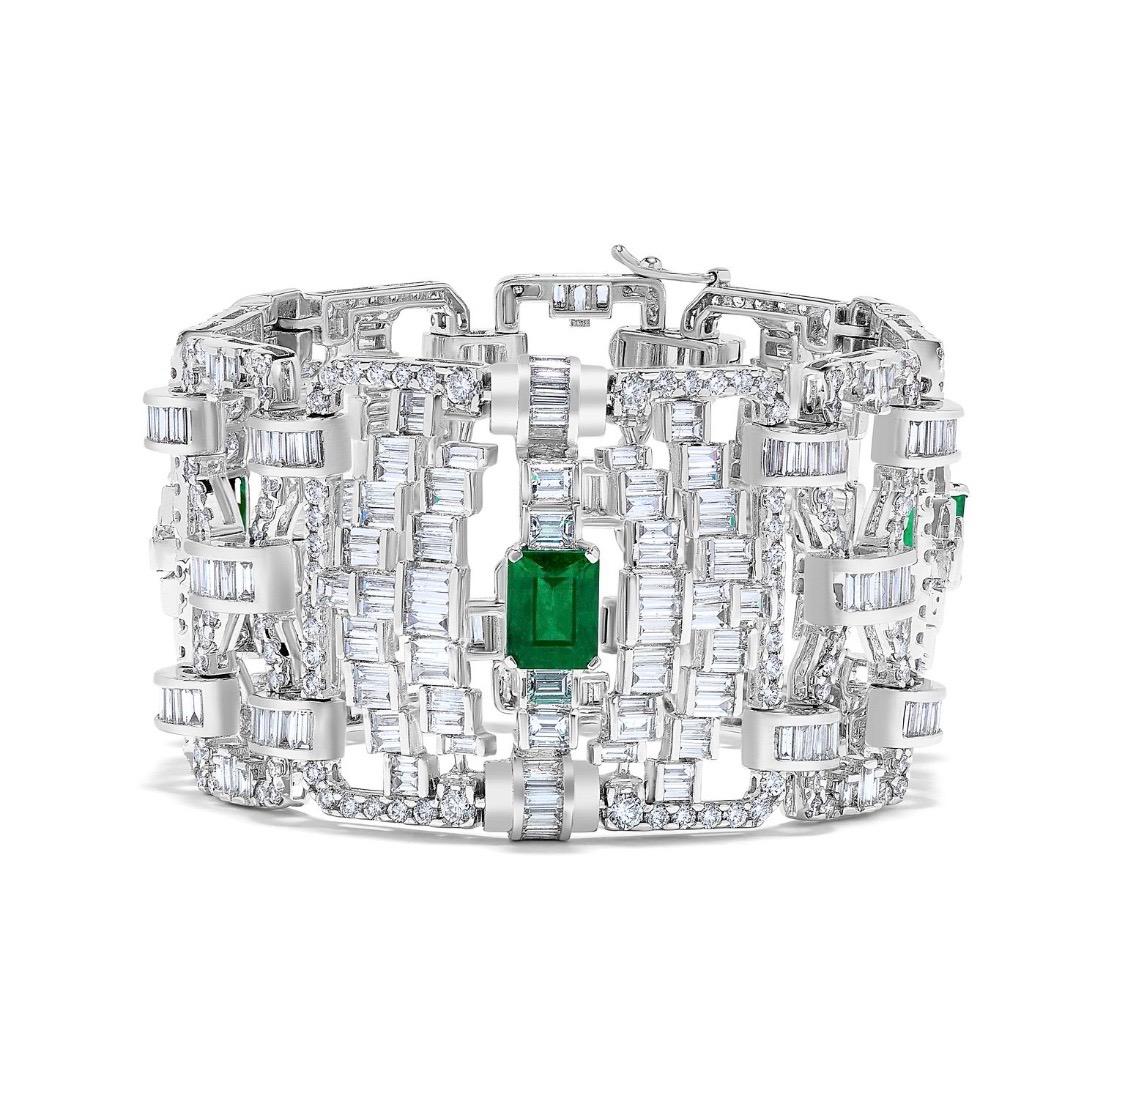 Aus dem Emilio Jewelry Vault, Präsentation eines atemberaubenden Armbands:
Smaragde: Zertifizierte kolumbianische Smaragde 5,00 Karat sind lebendige grüne Farbe mit ausgezeichnetem Kristall und ausgezeichnete Transparenz. 
diamanten: 36.20 Karat